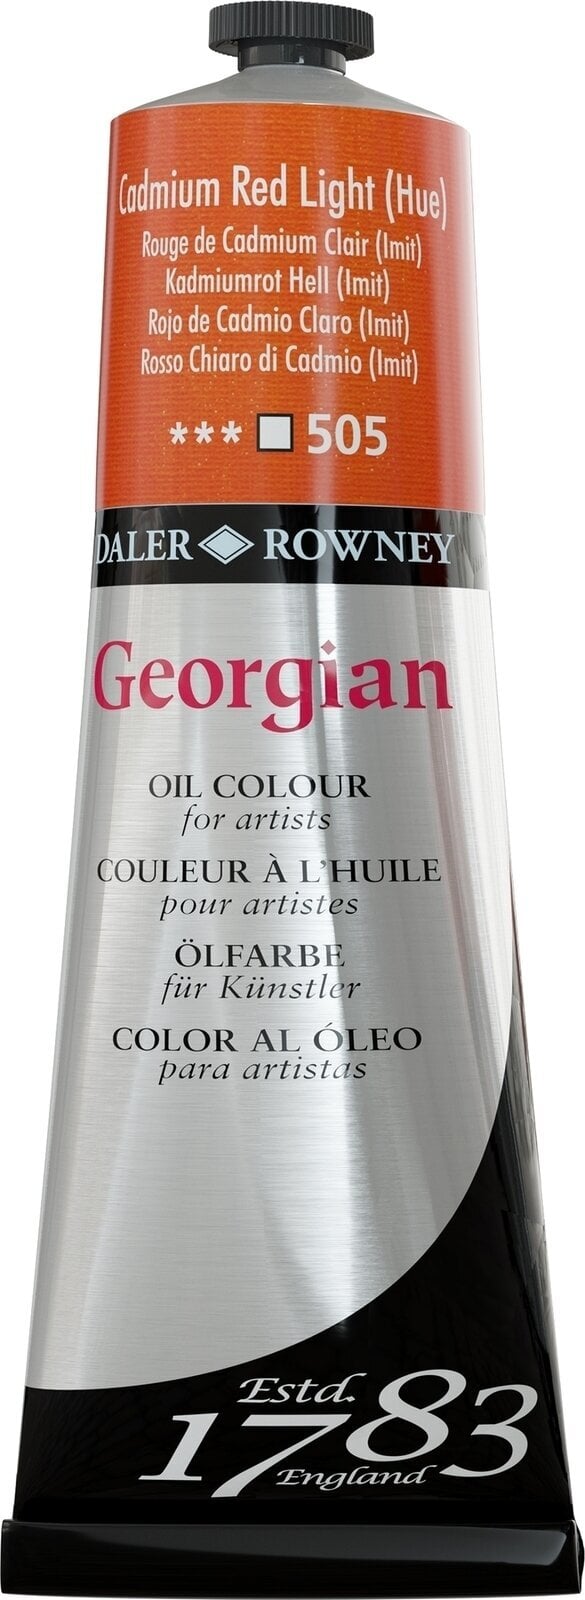 Χρώμα λαδιού Daler Rowney Georgian Λαδομπογιά Cadmium Red Light Hue 225 ml 1 τεμ.